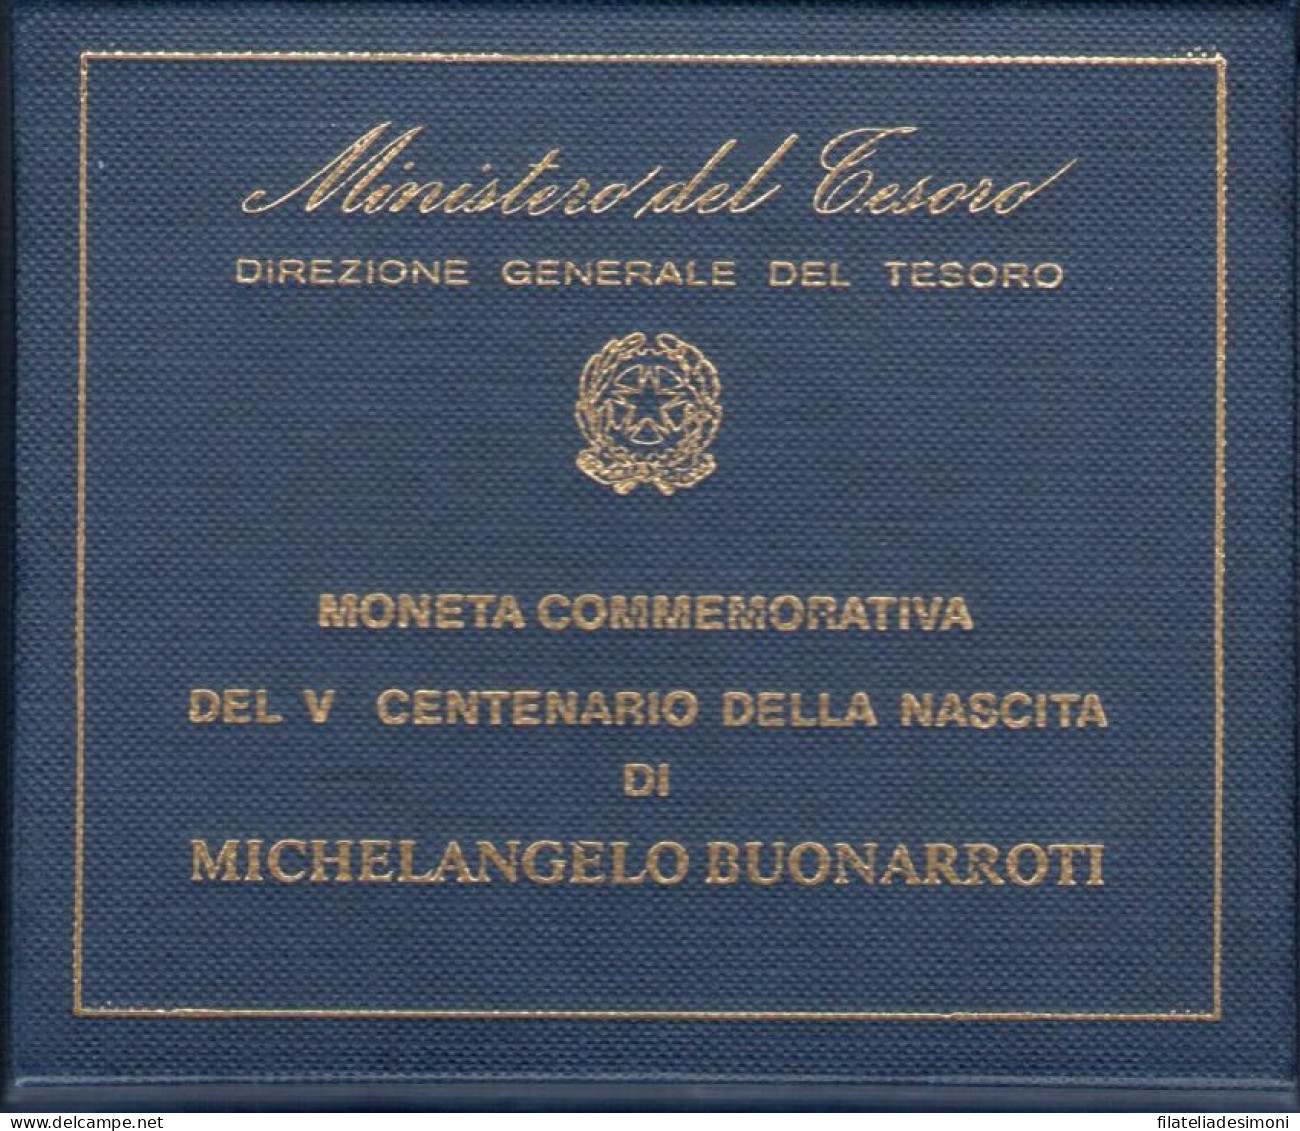 1975 Italia - Repubblica - 500 Lire Argento Michelangelo Buonarroti - FDC - 500 Liras